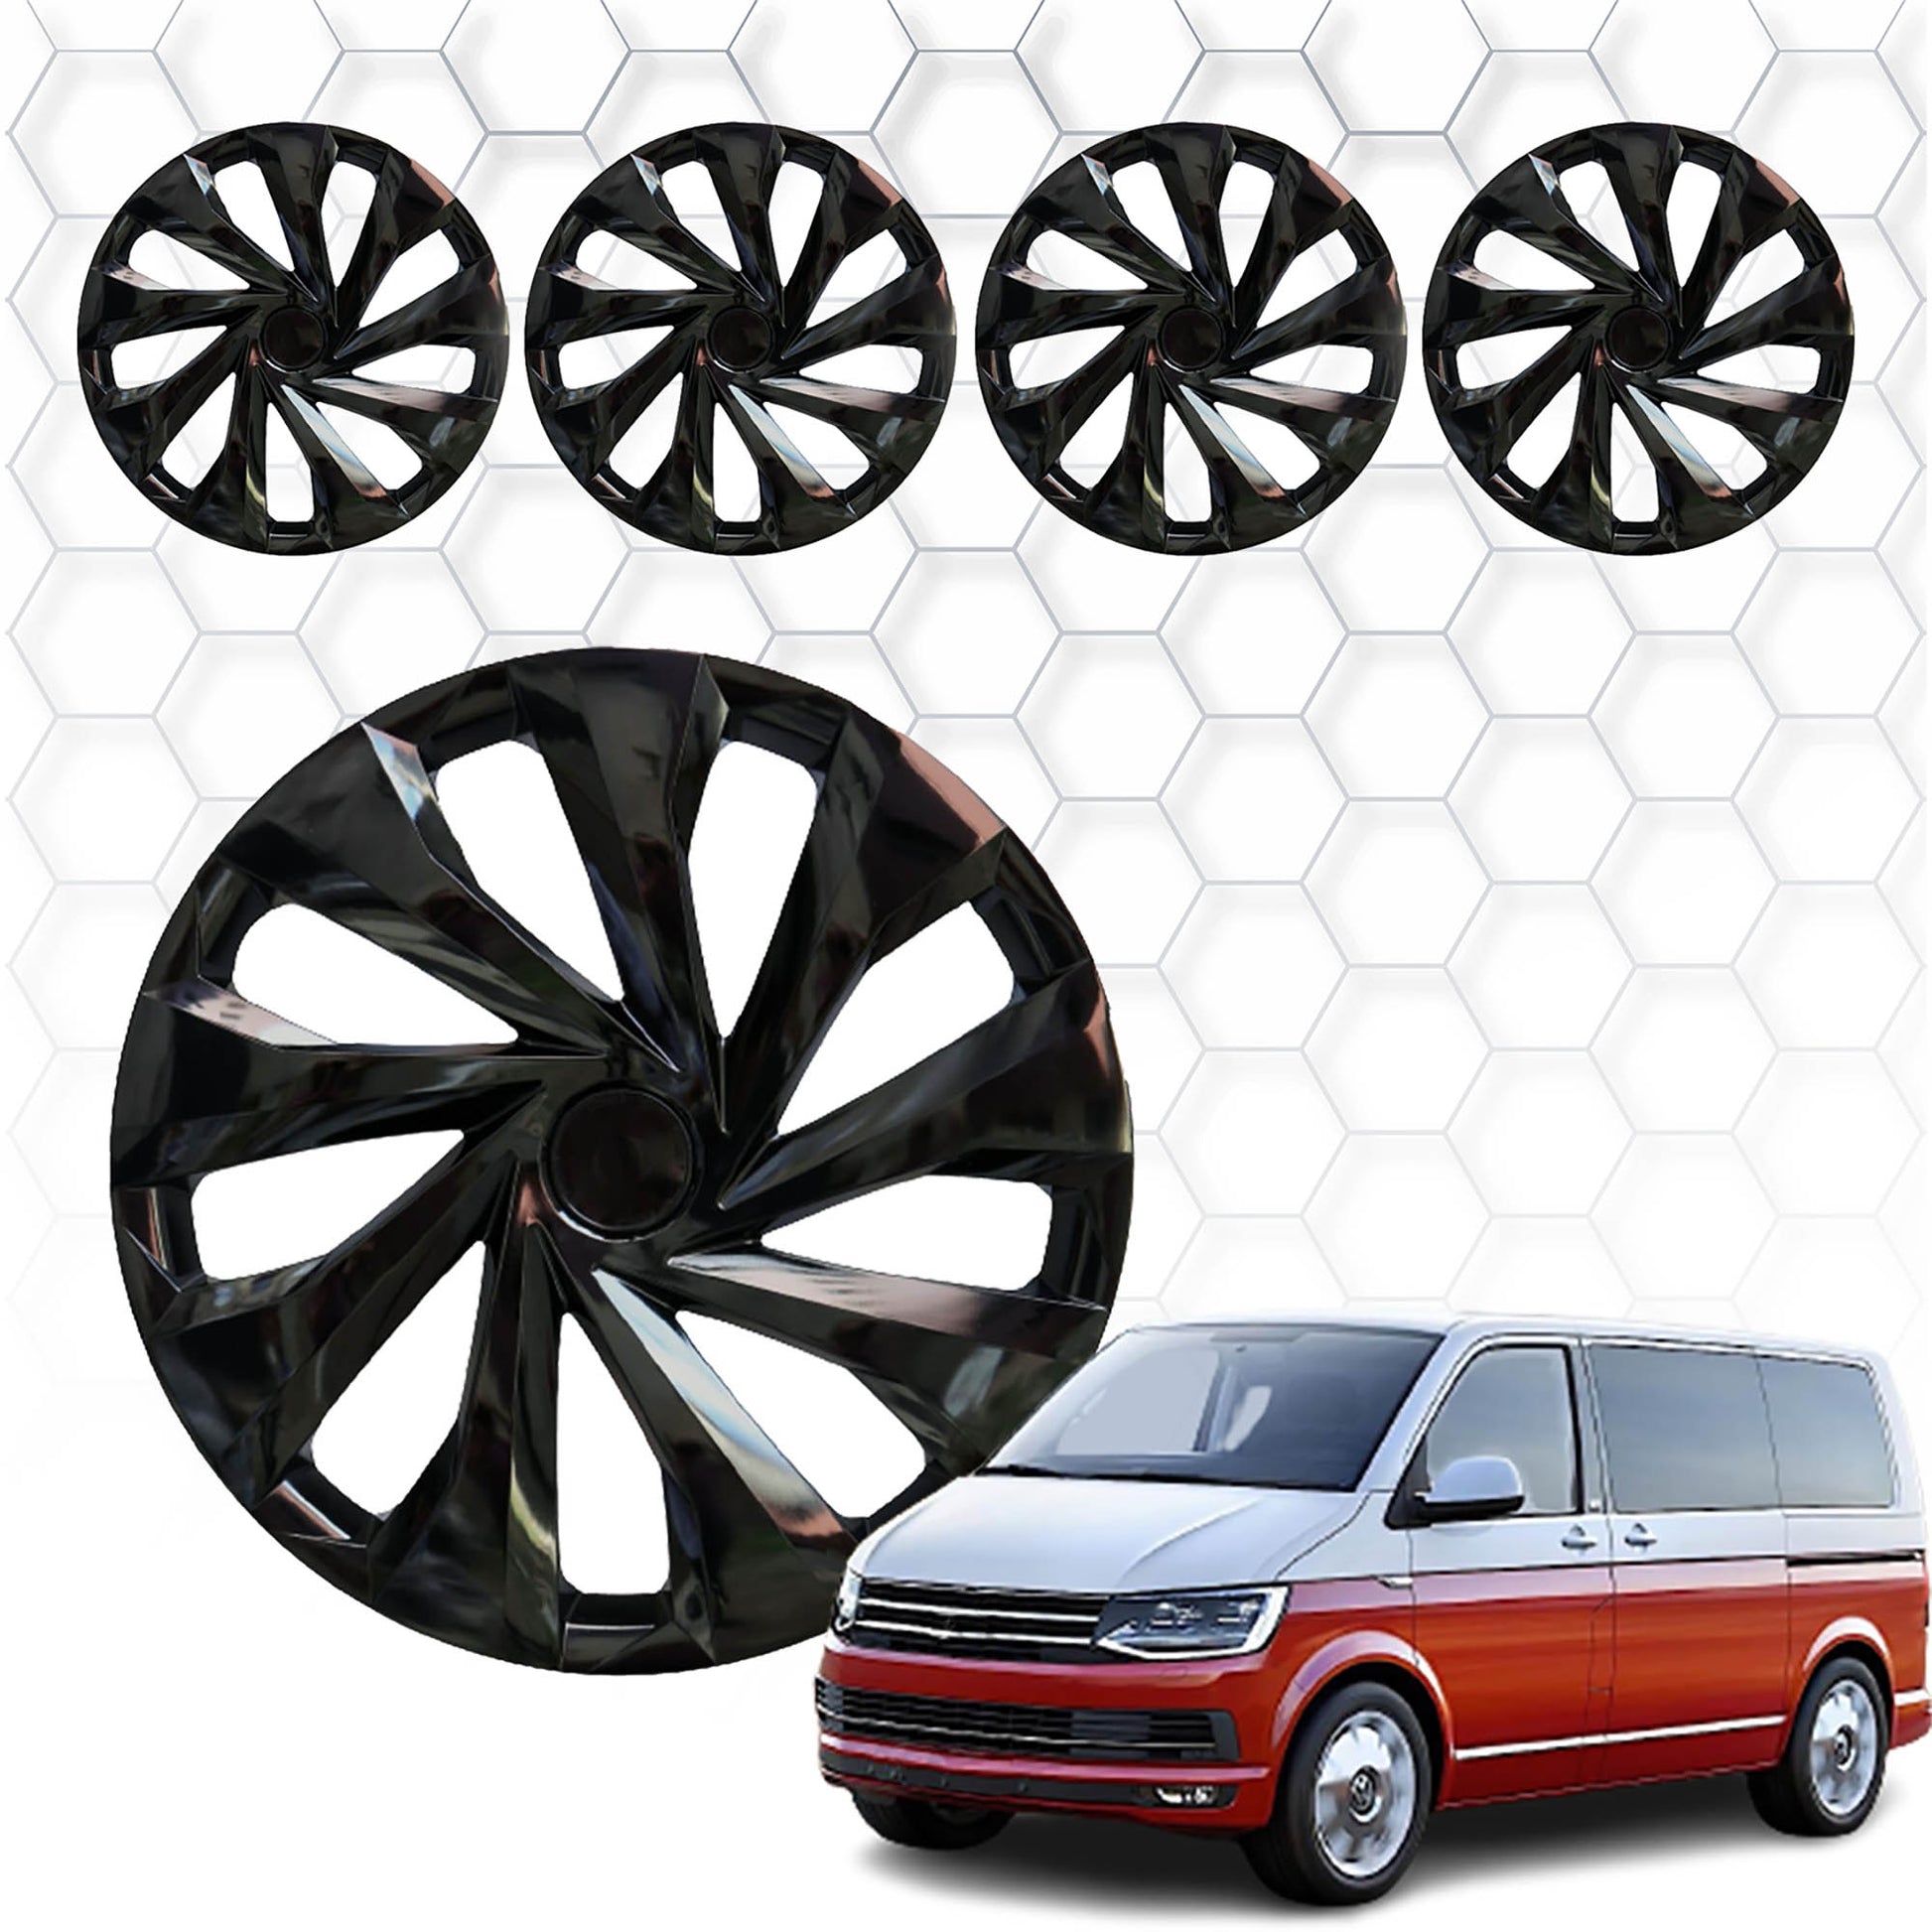 Volkswagen T6.1 Transporter Jant Kapağı Aksesuarları Detaylı Resimleri, Kampanya bilgileri ve fiyatı - 1